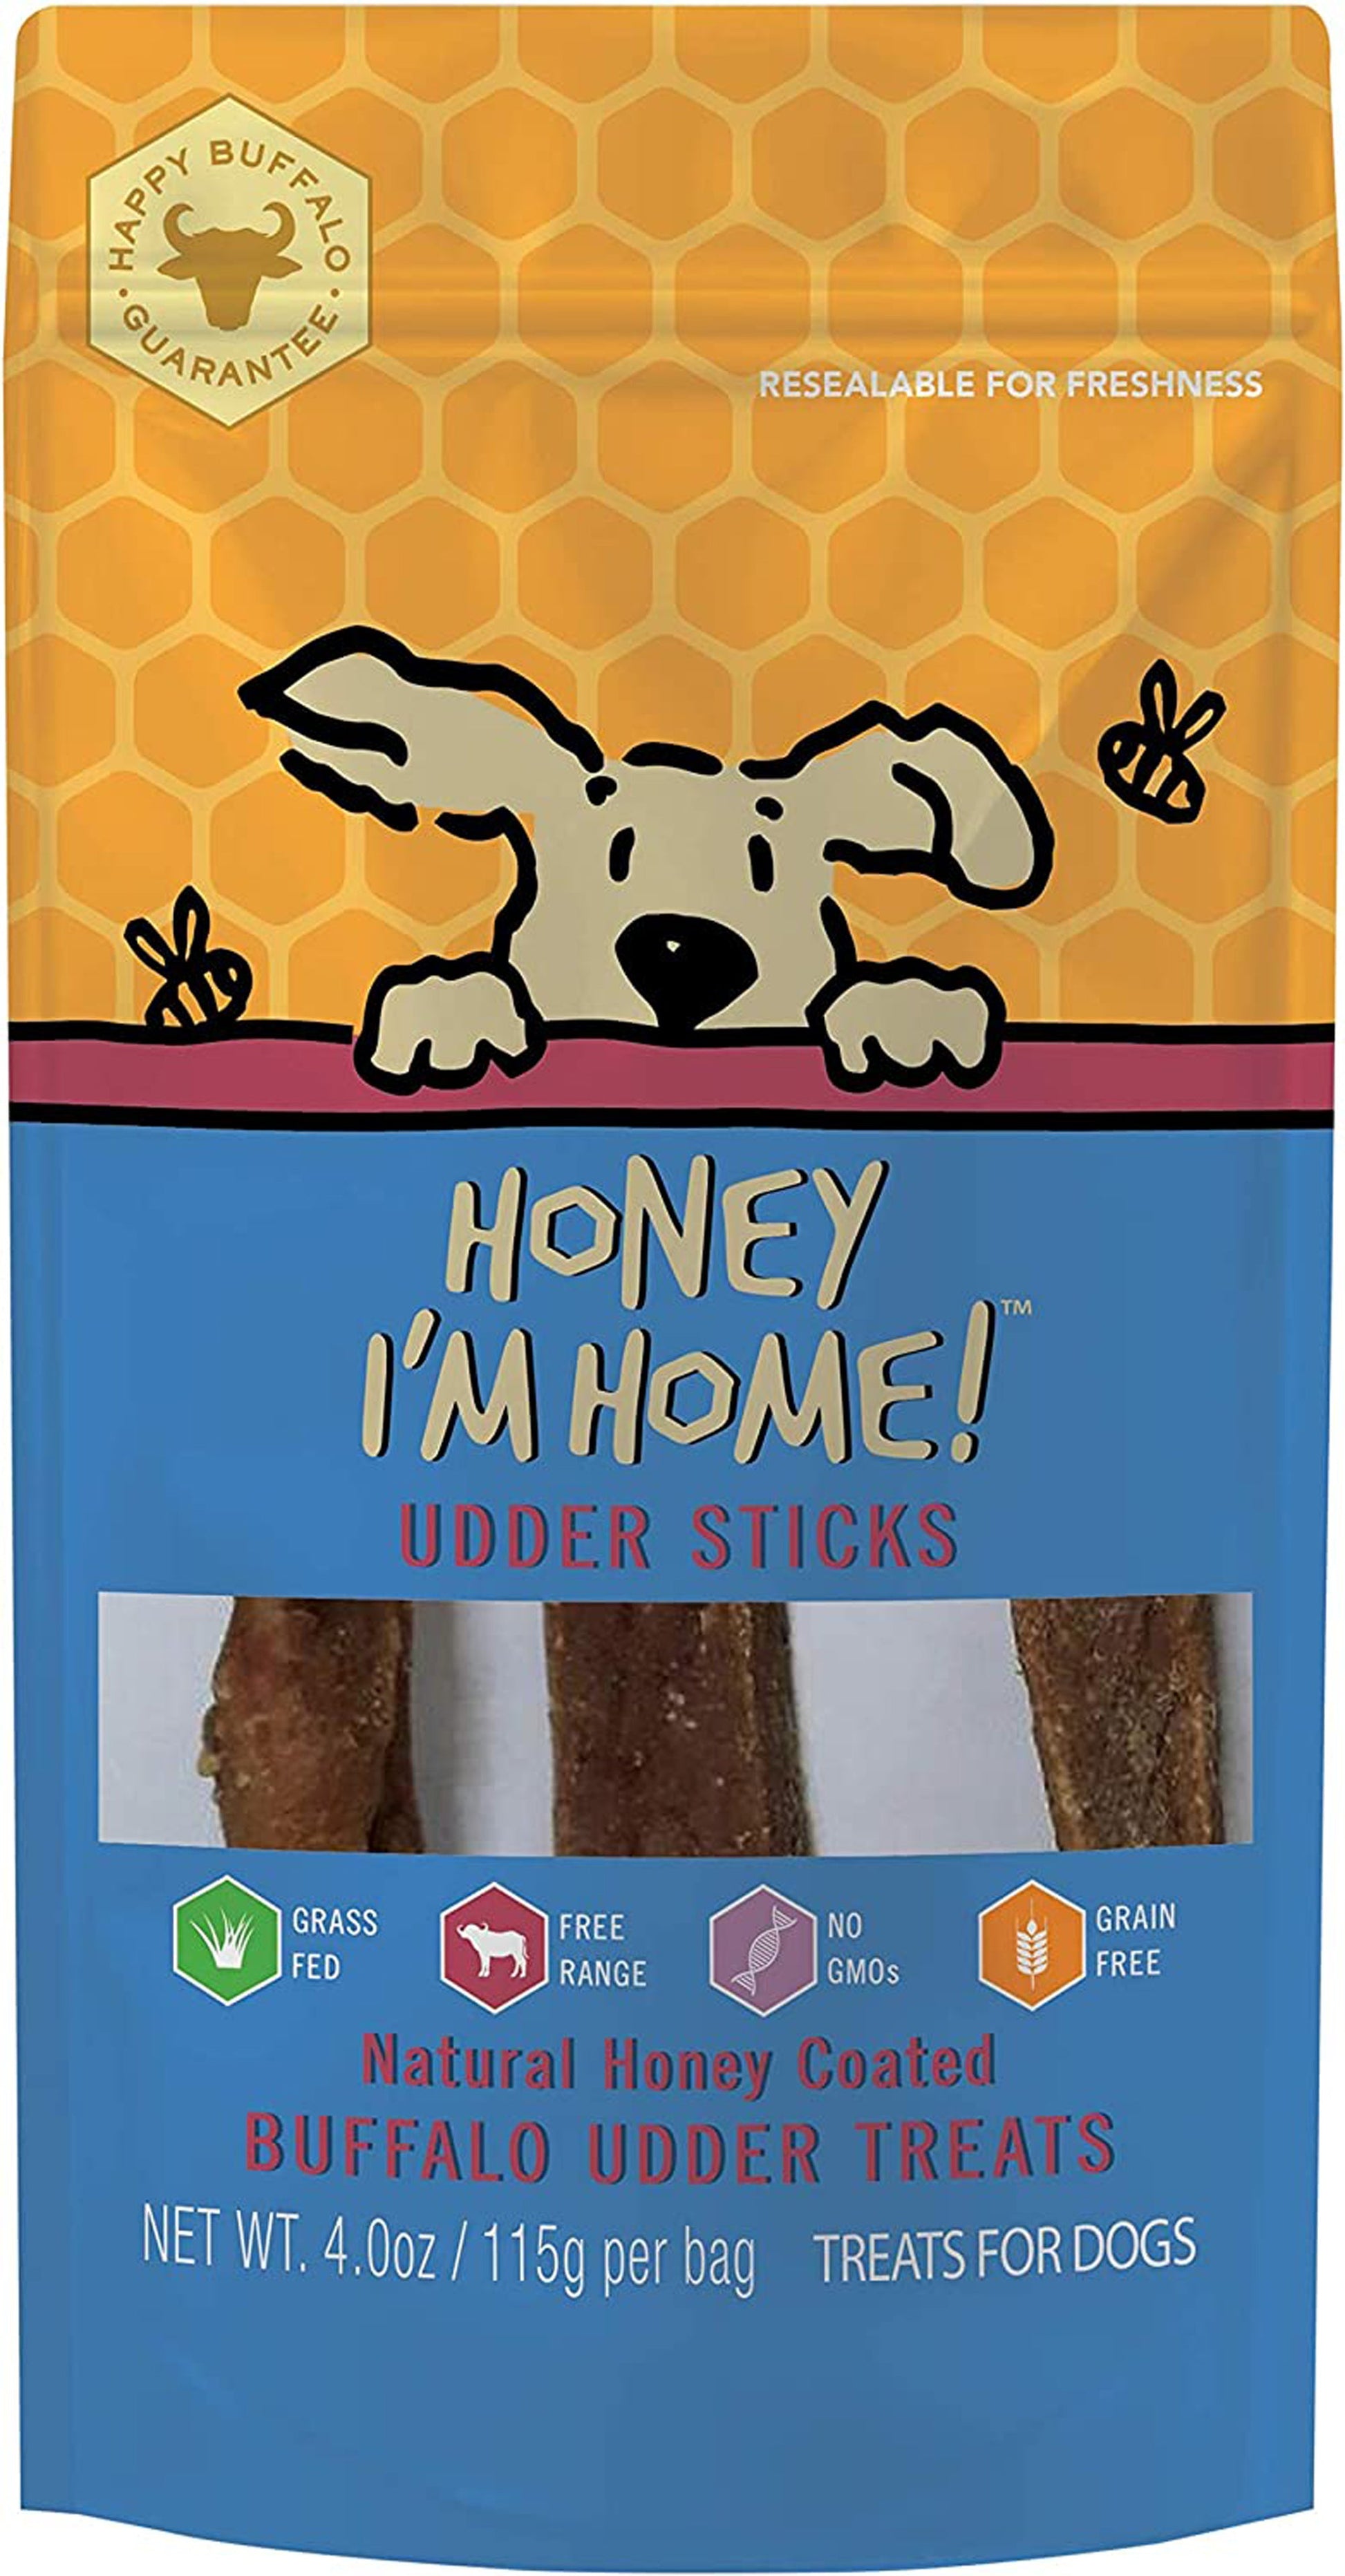 Honey Im Home Dog Buffalo Udder Sticks 4oz. - Pet Supplies - Honey Im home